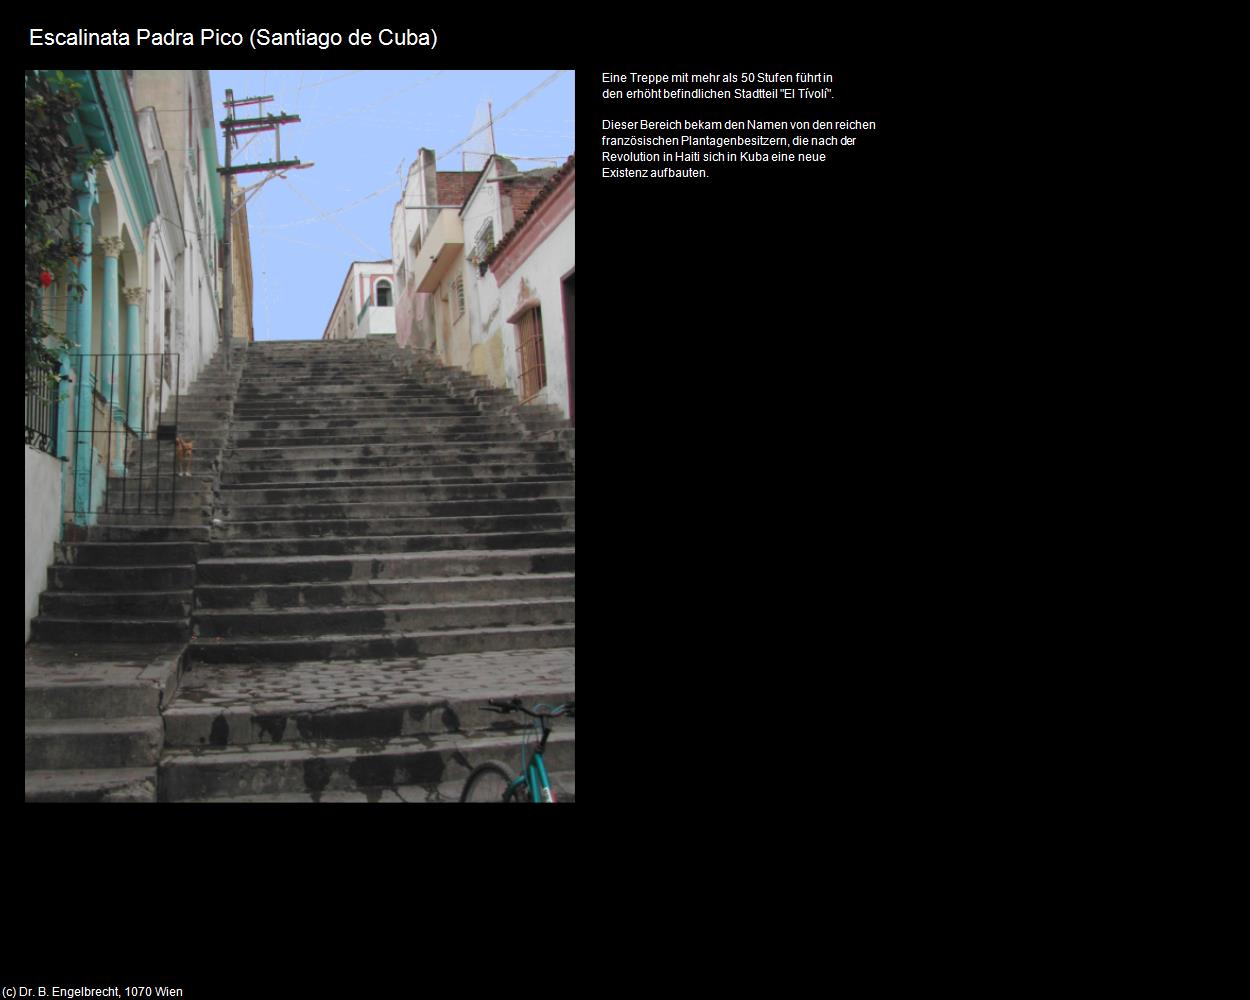 Escalinata Padra Pico (Santiago de Cuba) in KUBA